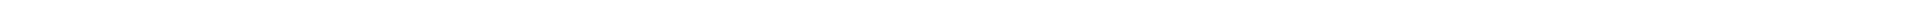 Лечение кариеса зубов - цены в Астане, Алматы, Атырау, Усть-Каменогорск, Уральск, Кокшетау в Казахстане, фото 8